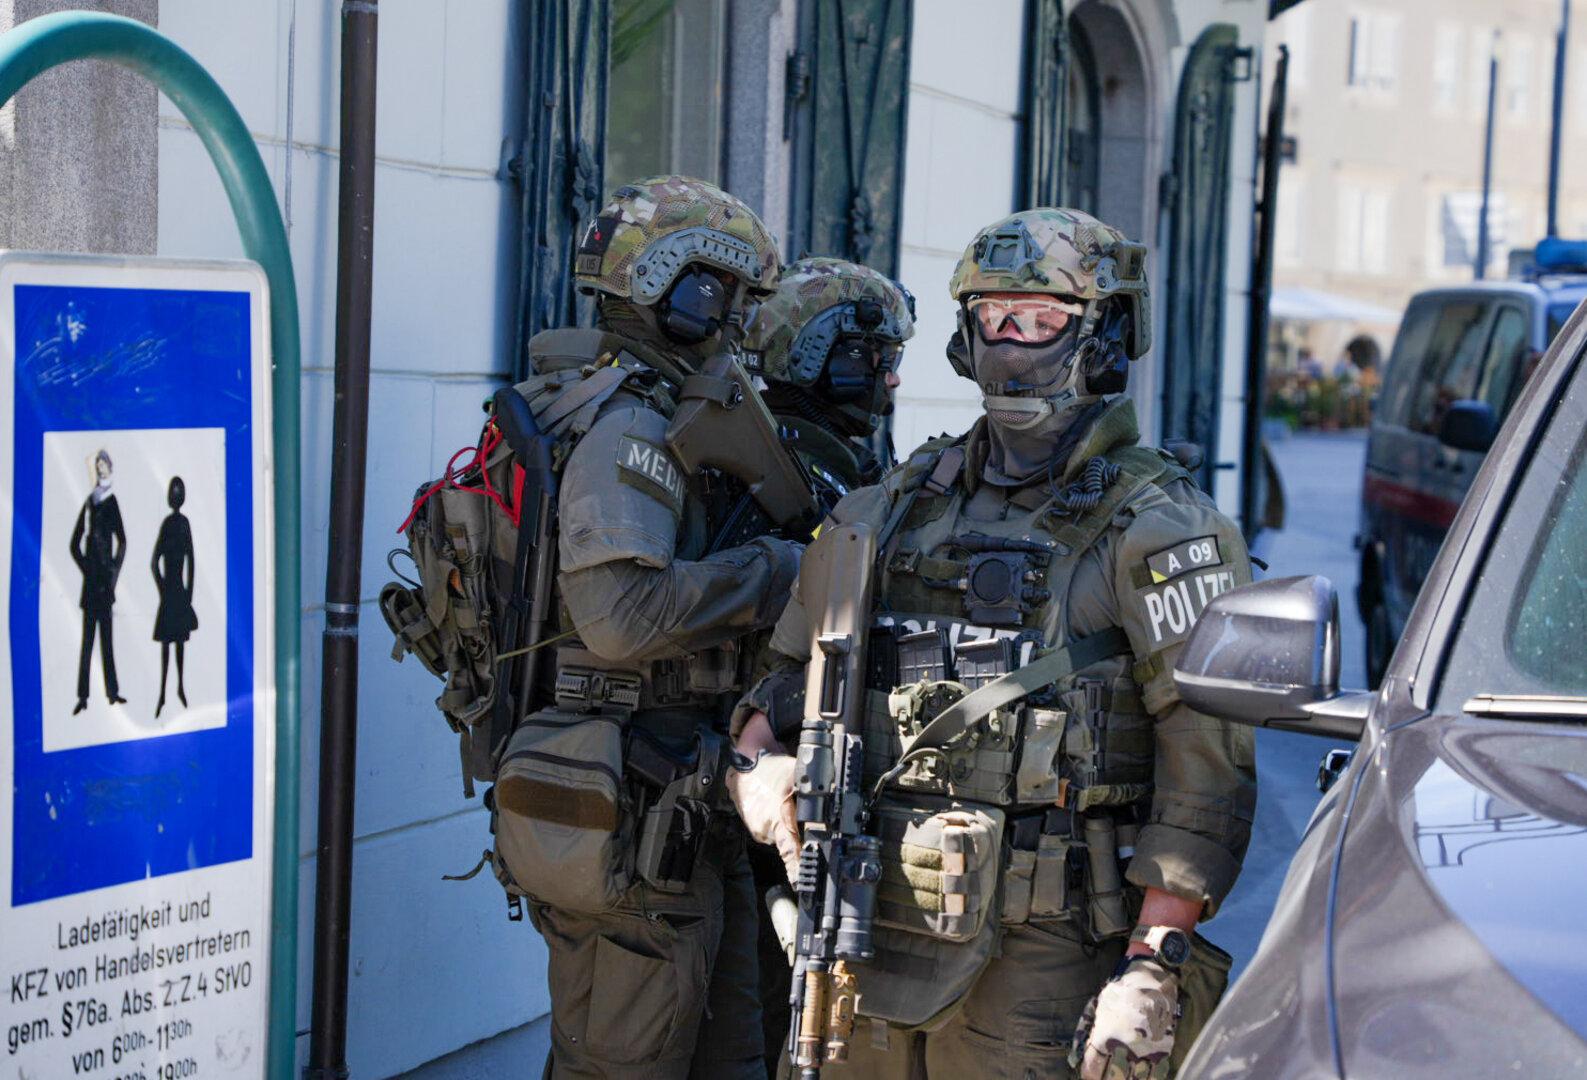 Bombendrohung gegen Polizei in Linz: Stadtkommando evakuiert